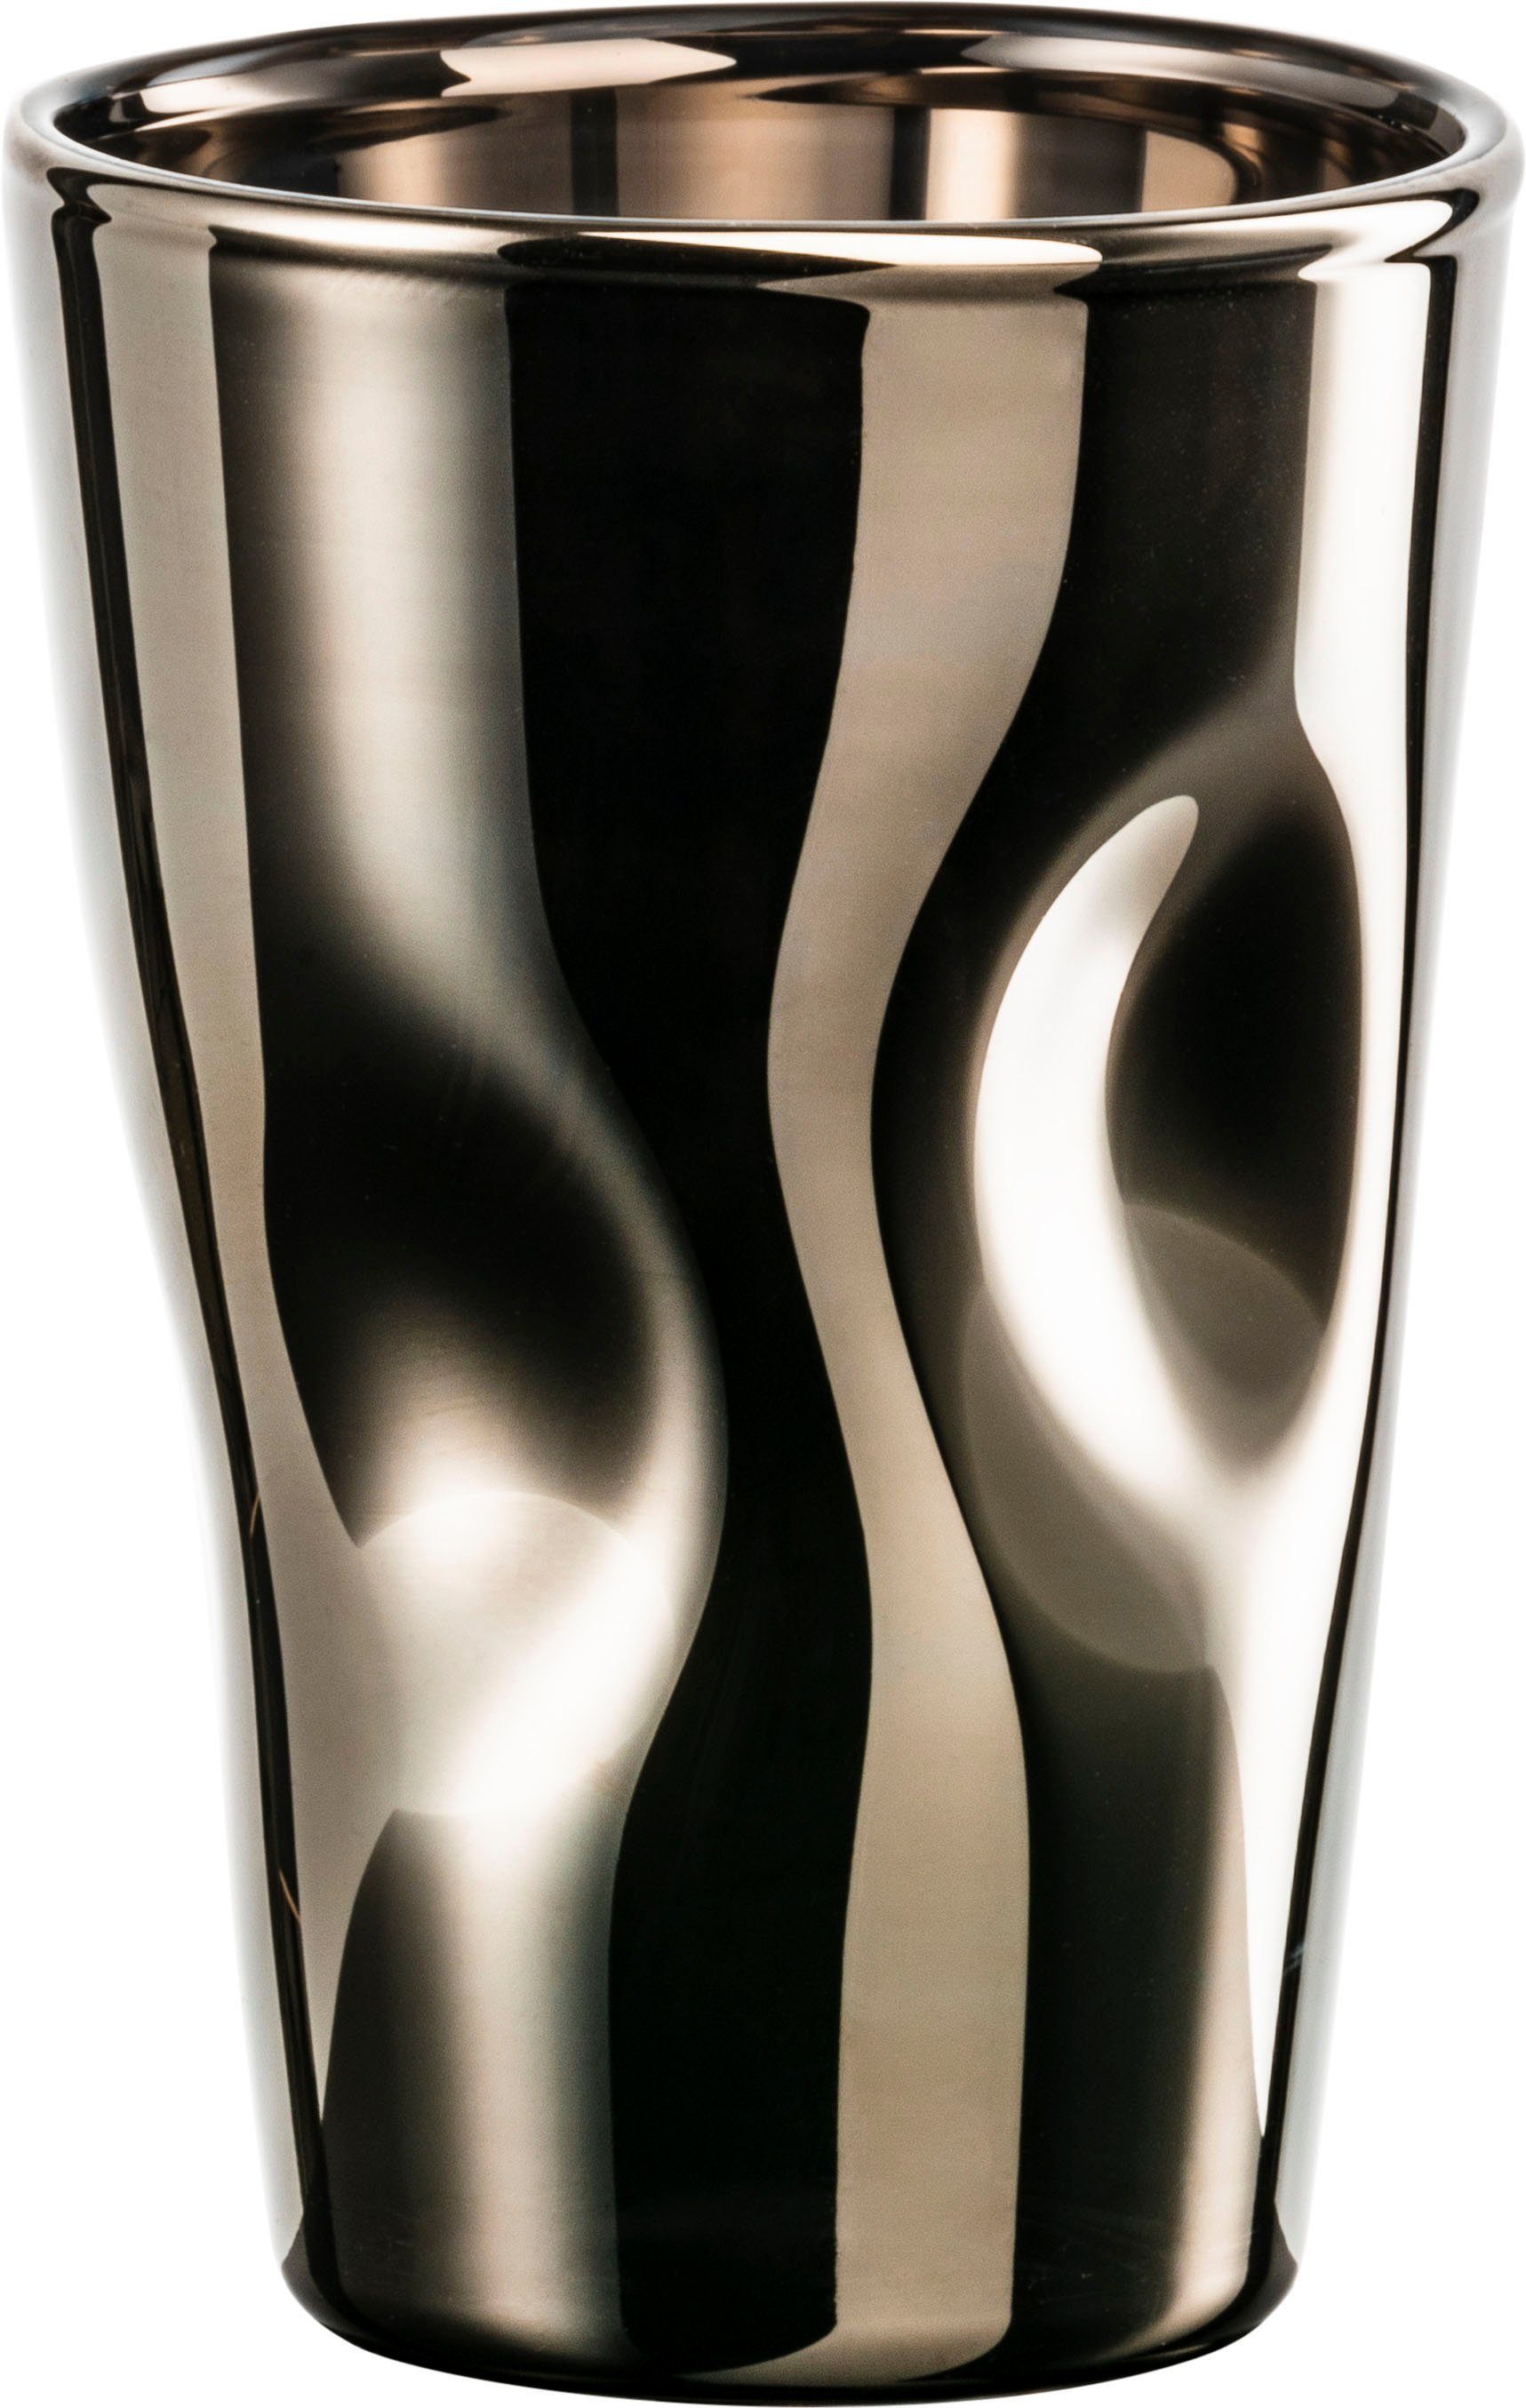 Eisch Espressoglas UNIK, Borosilikatglas, veredelt mit echtem Platin, 2- teilig, 100 ml, Bei einer Höhe von 8,5 cm beträgt das Volumen des Glases  100ml.